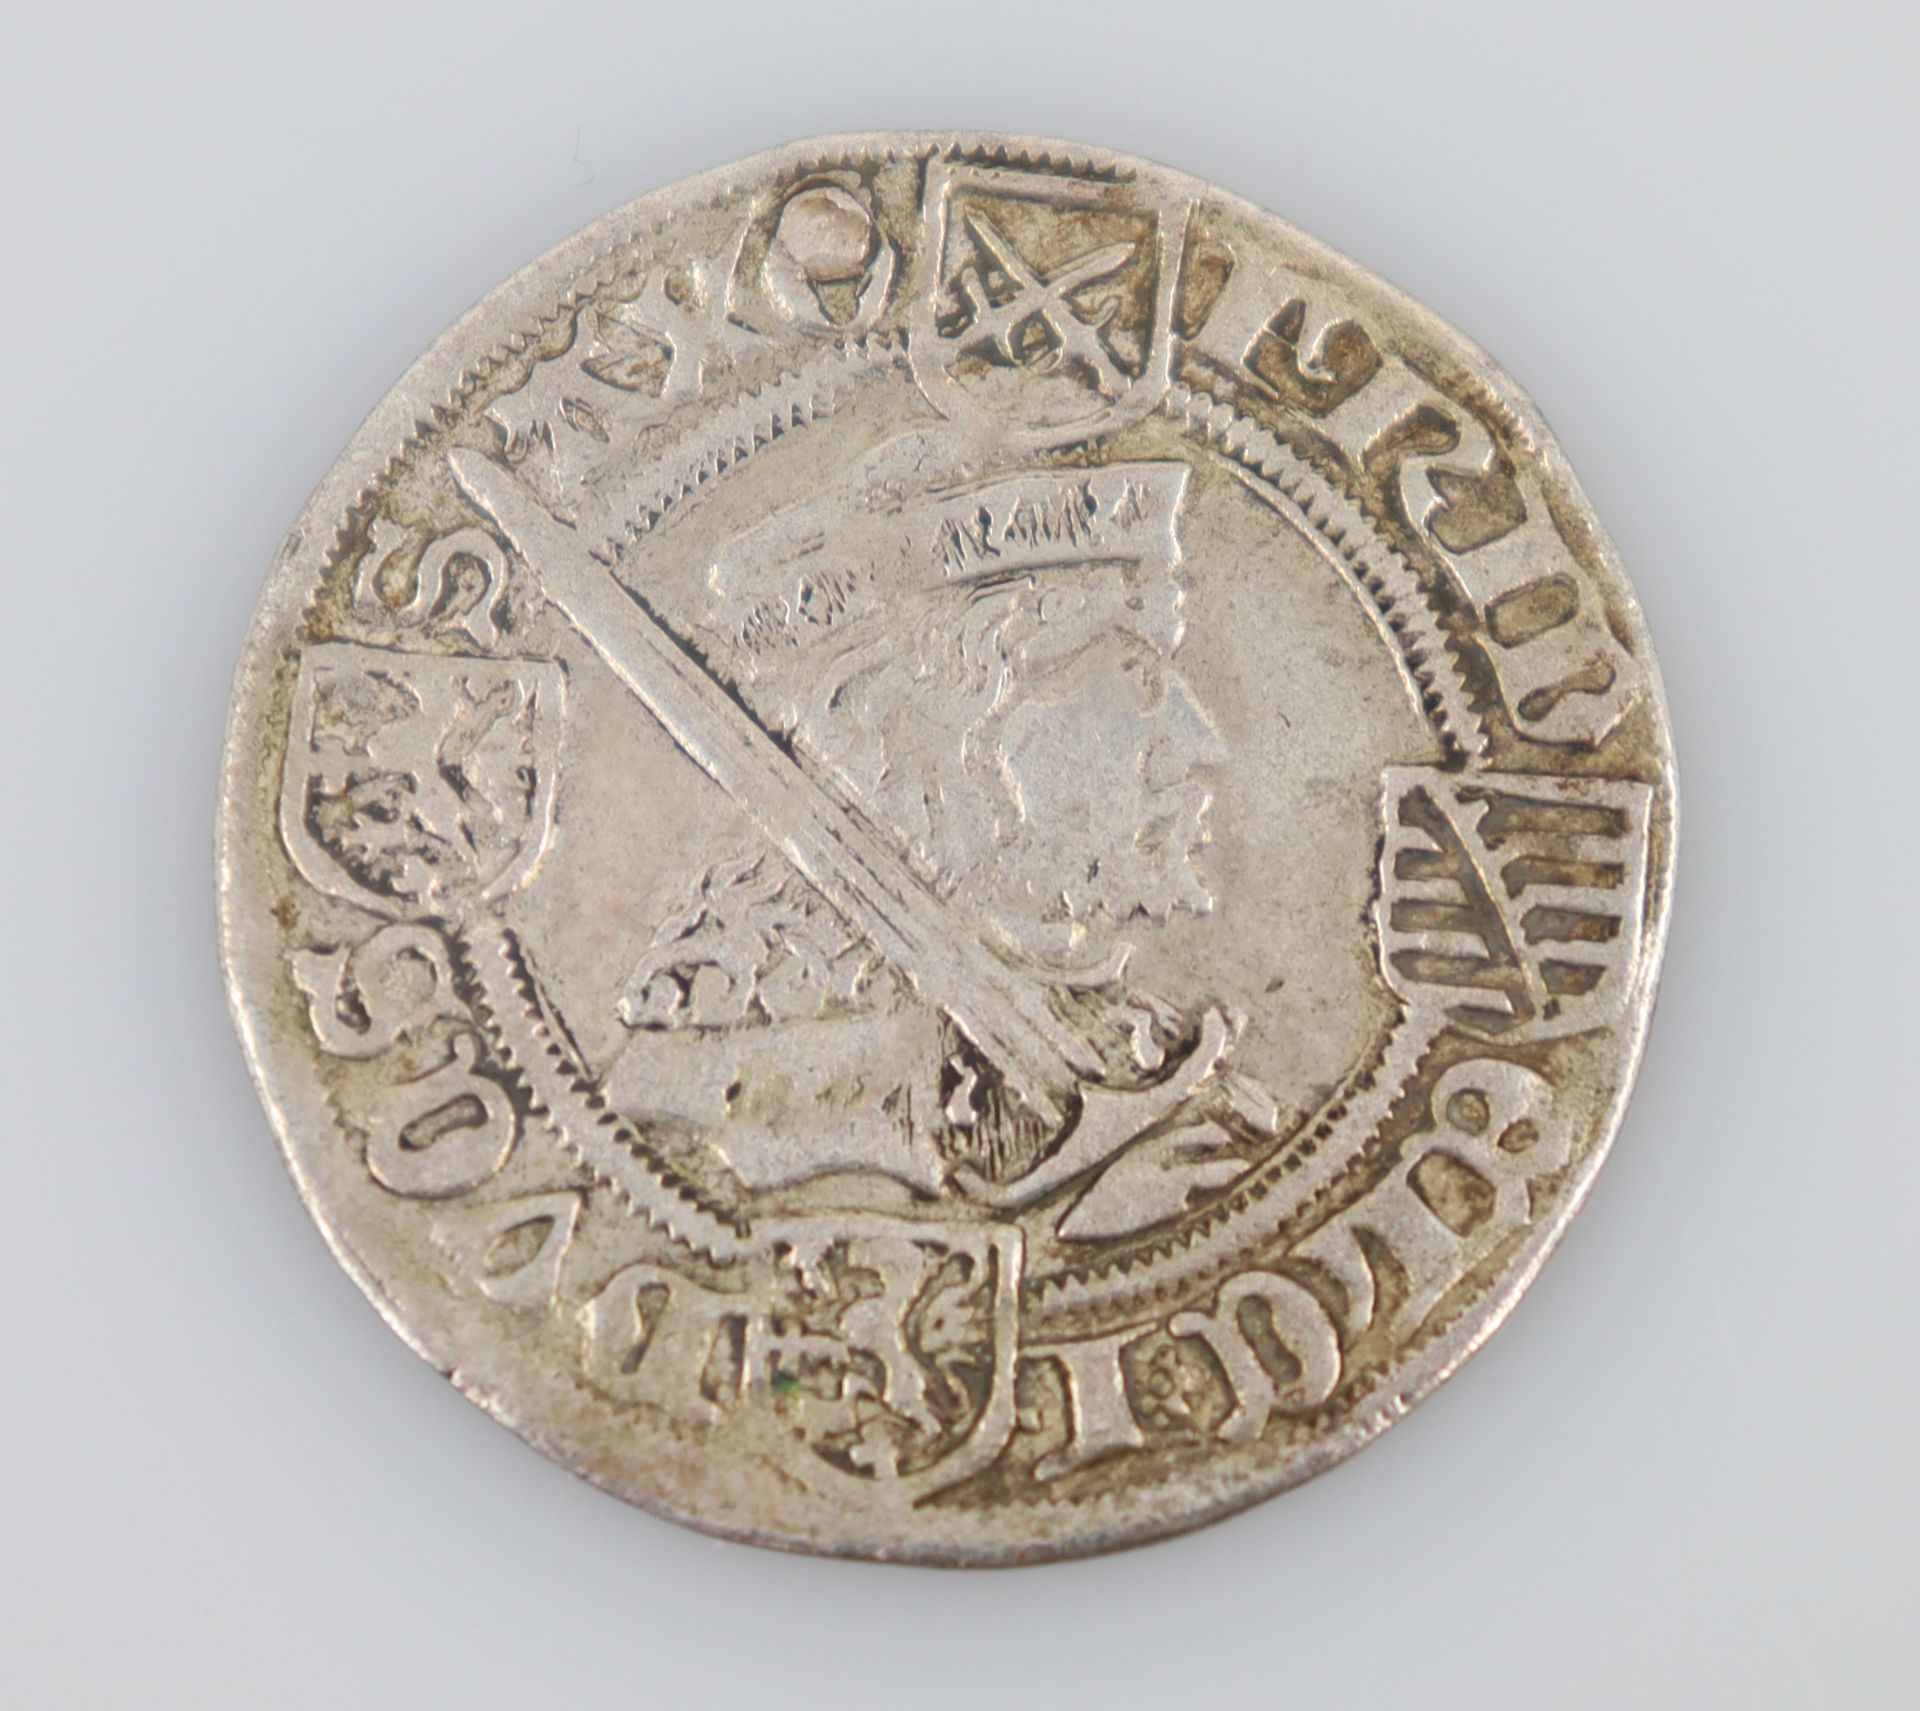 BARTGROSCHEN. Zwickau. Silbermünze. Friedrich III. 1493.